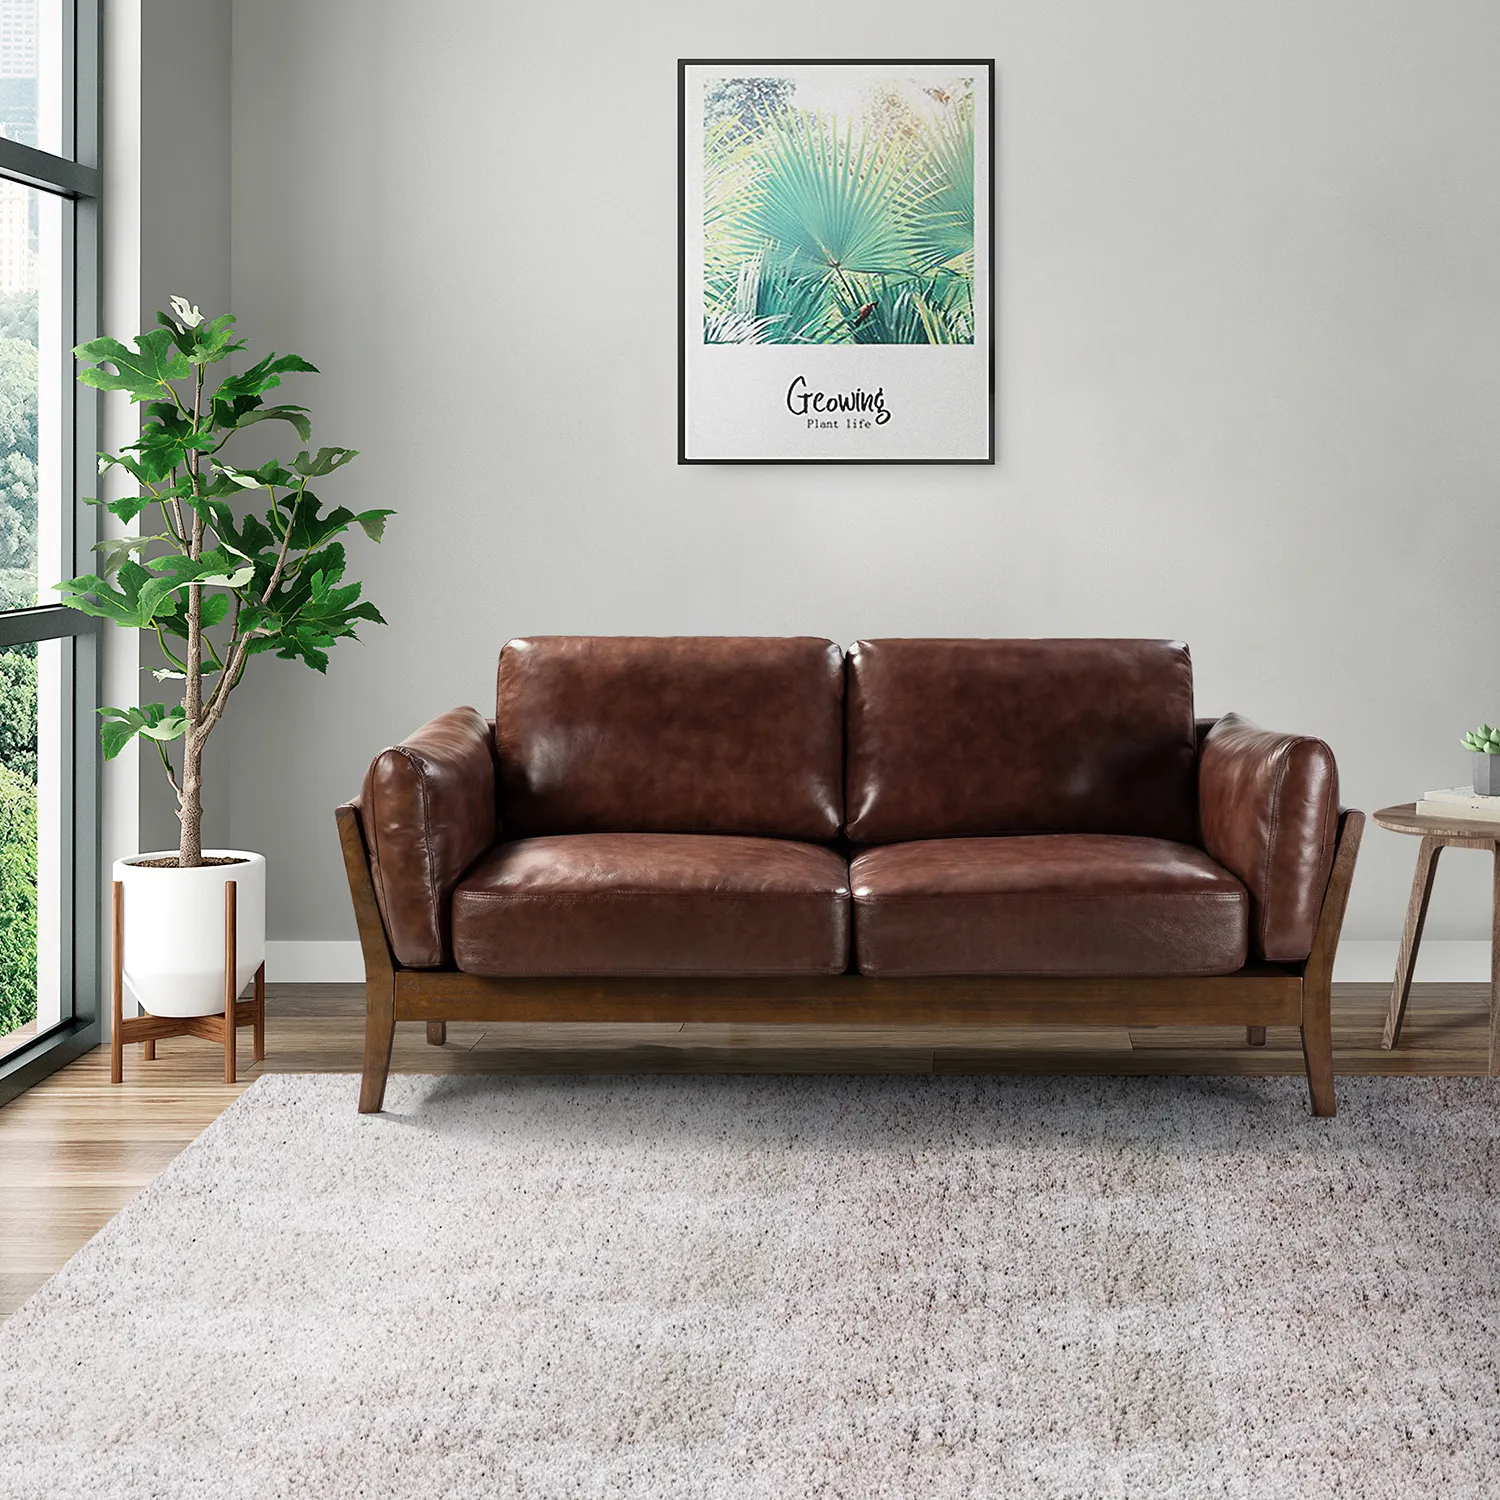 Drop Ship Warehouse Warehouse vendita diretta all'ingrosso Design moderno soggiorno divani divano in pelle Set mobili